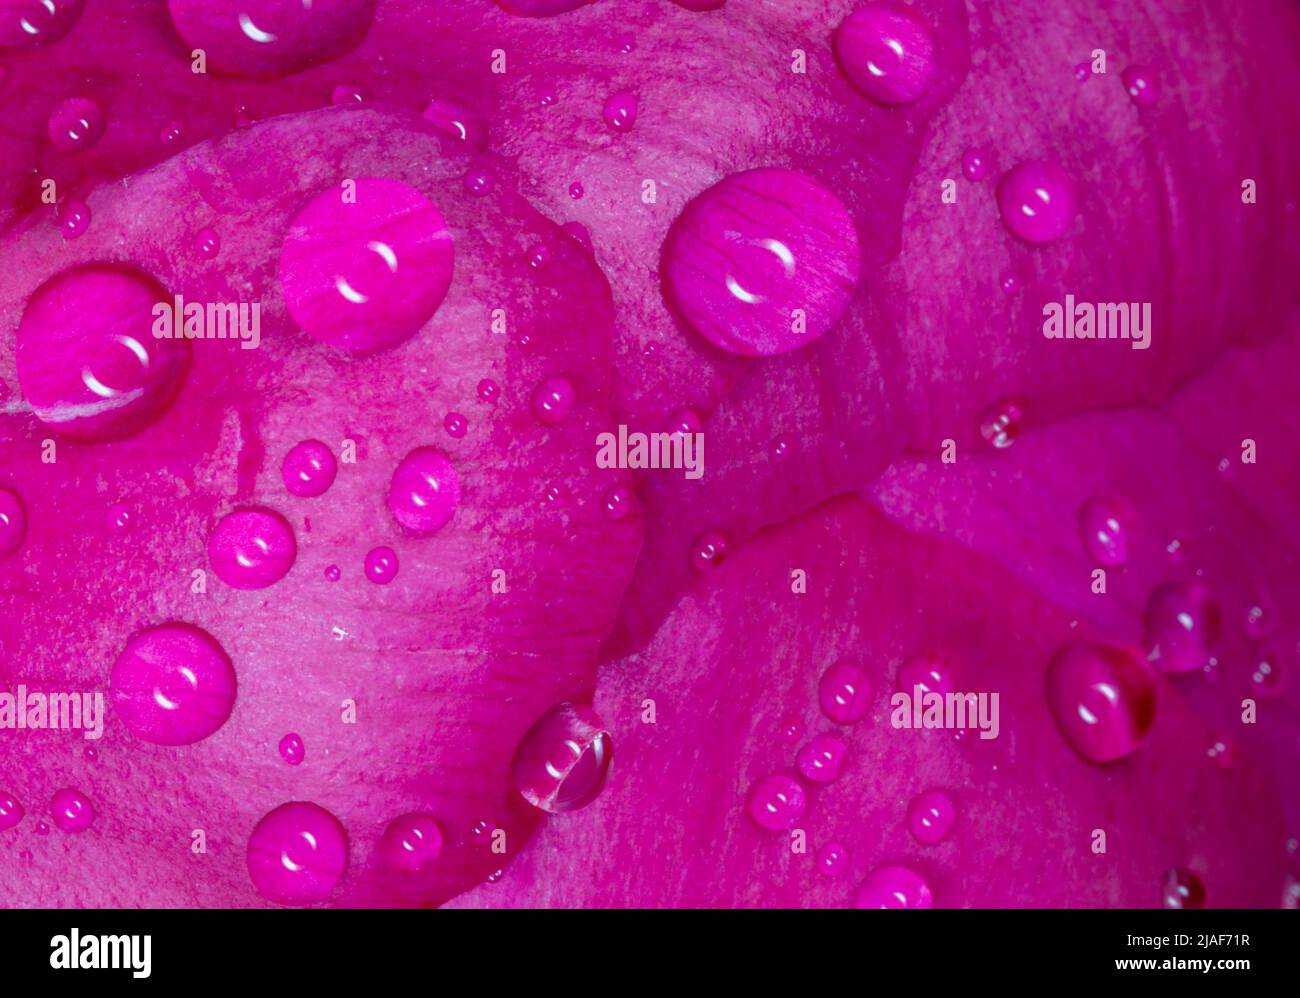 Nahaufnahme der Blütenblätter der purpurnen Pfingstrose, die mit Regentropfen bedeckt sind Stockfoto